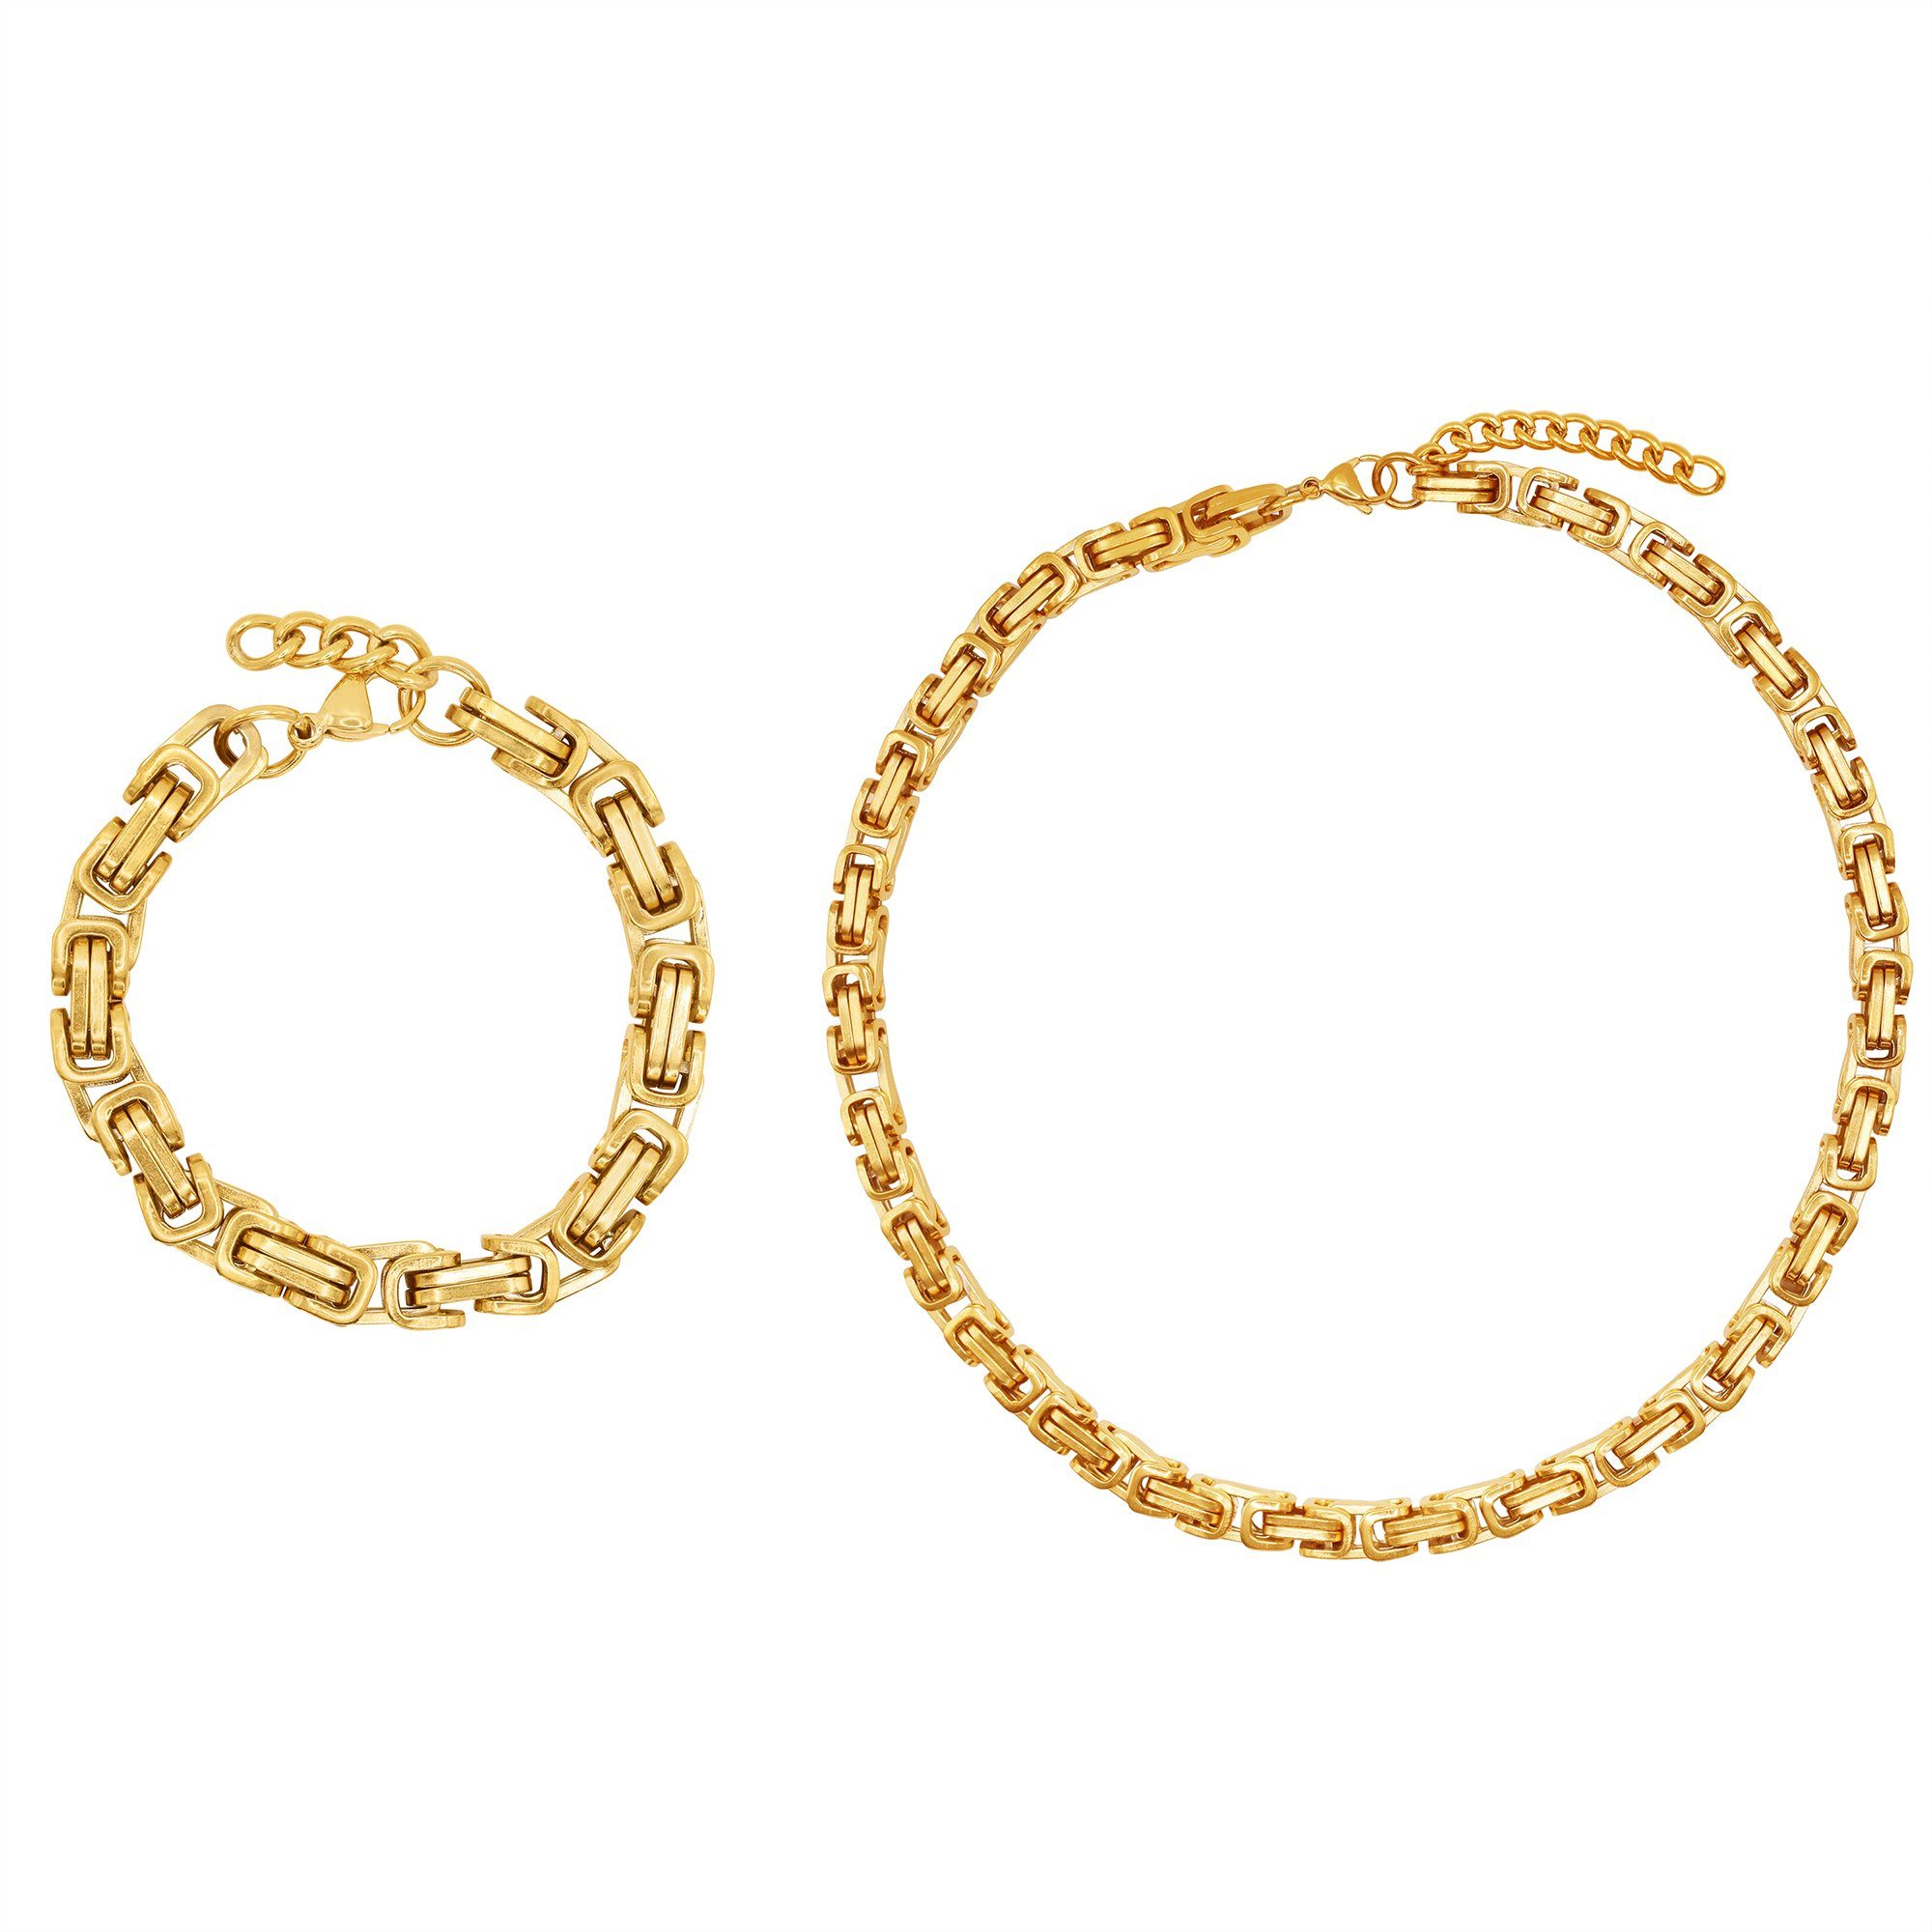 Heideman Collier Set Rosie goldfarben (inkl. Geschenkverpackung), Geschenkset Damen mit Armband und Halskette